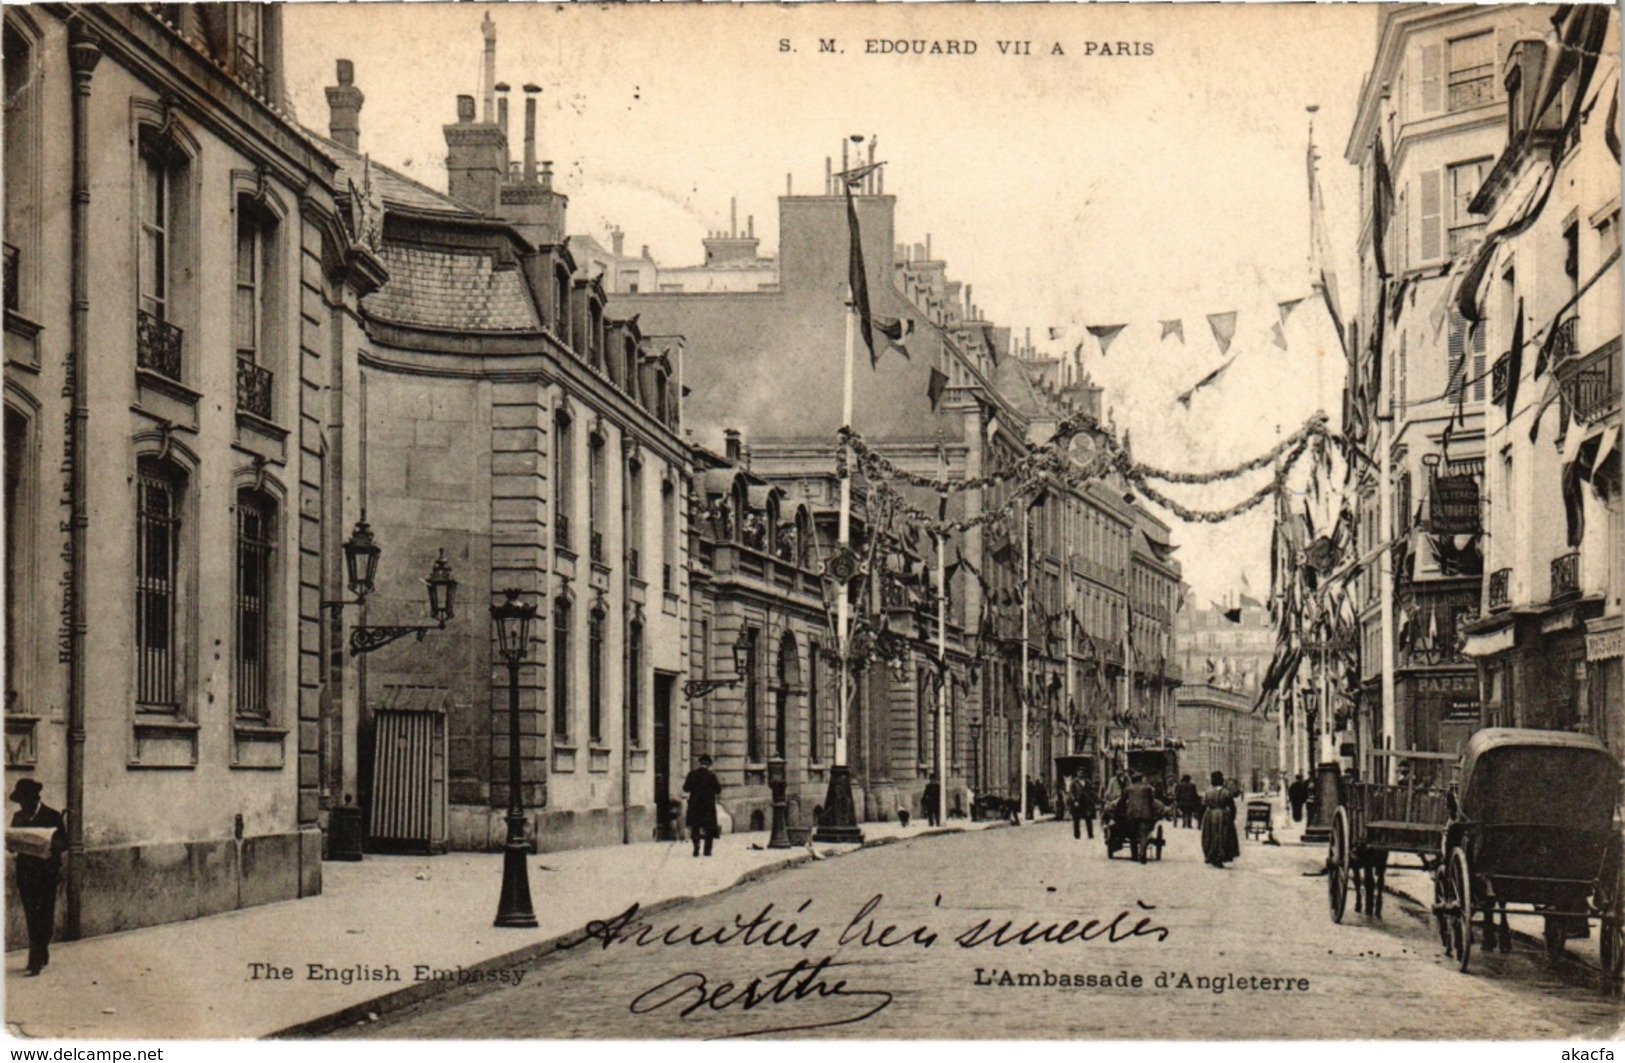 CPA PARIS 2e - S.M. Edouard VII A Paris (83774) - Réceptions